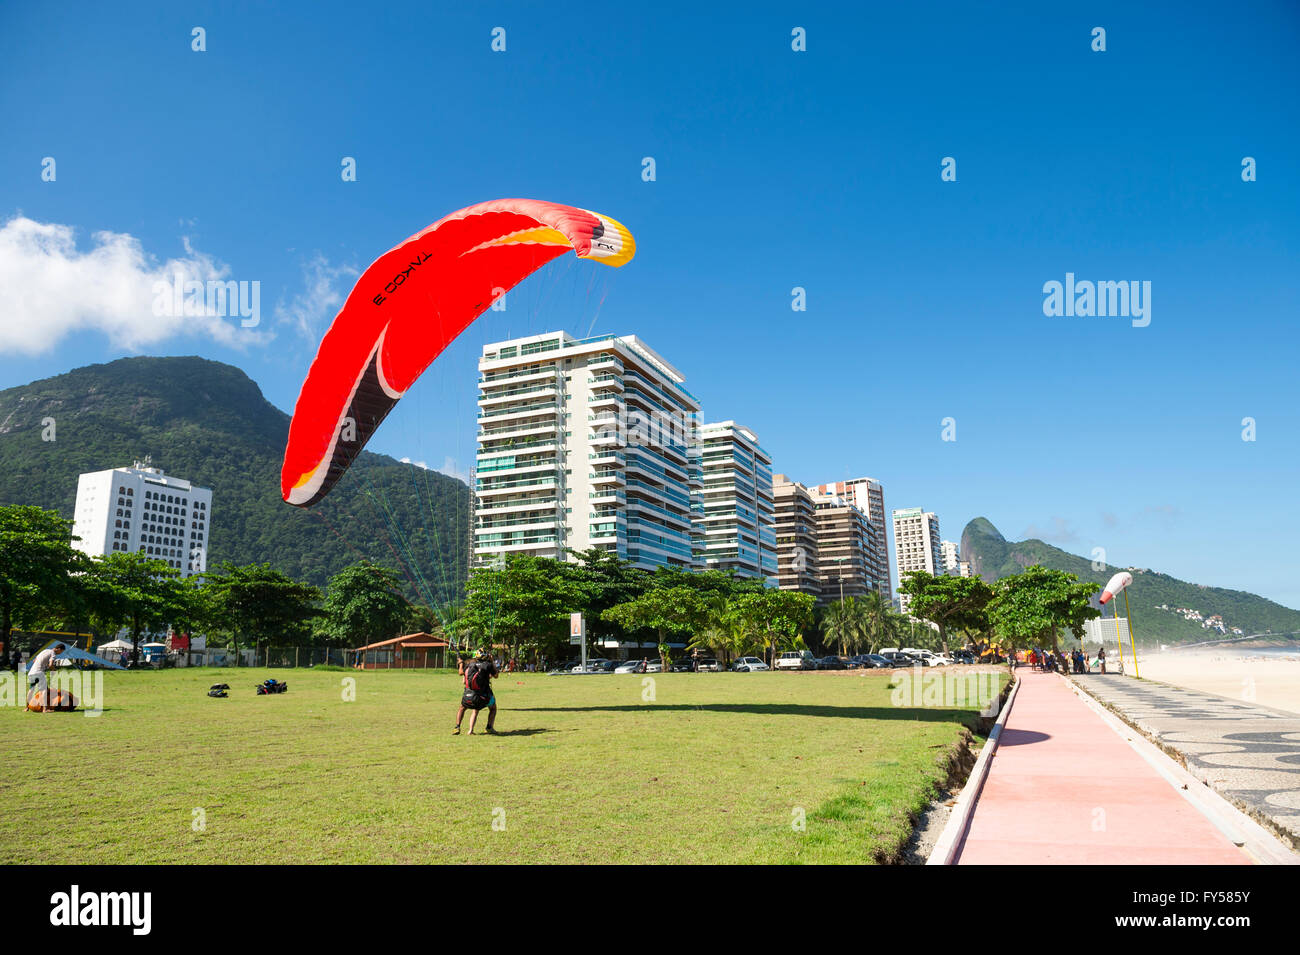 RIO DE JANEIRO - MARCH 19, 2016: Paraglider lands on the landing field beside the beach at São Conrado. Stock Photo